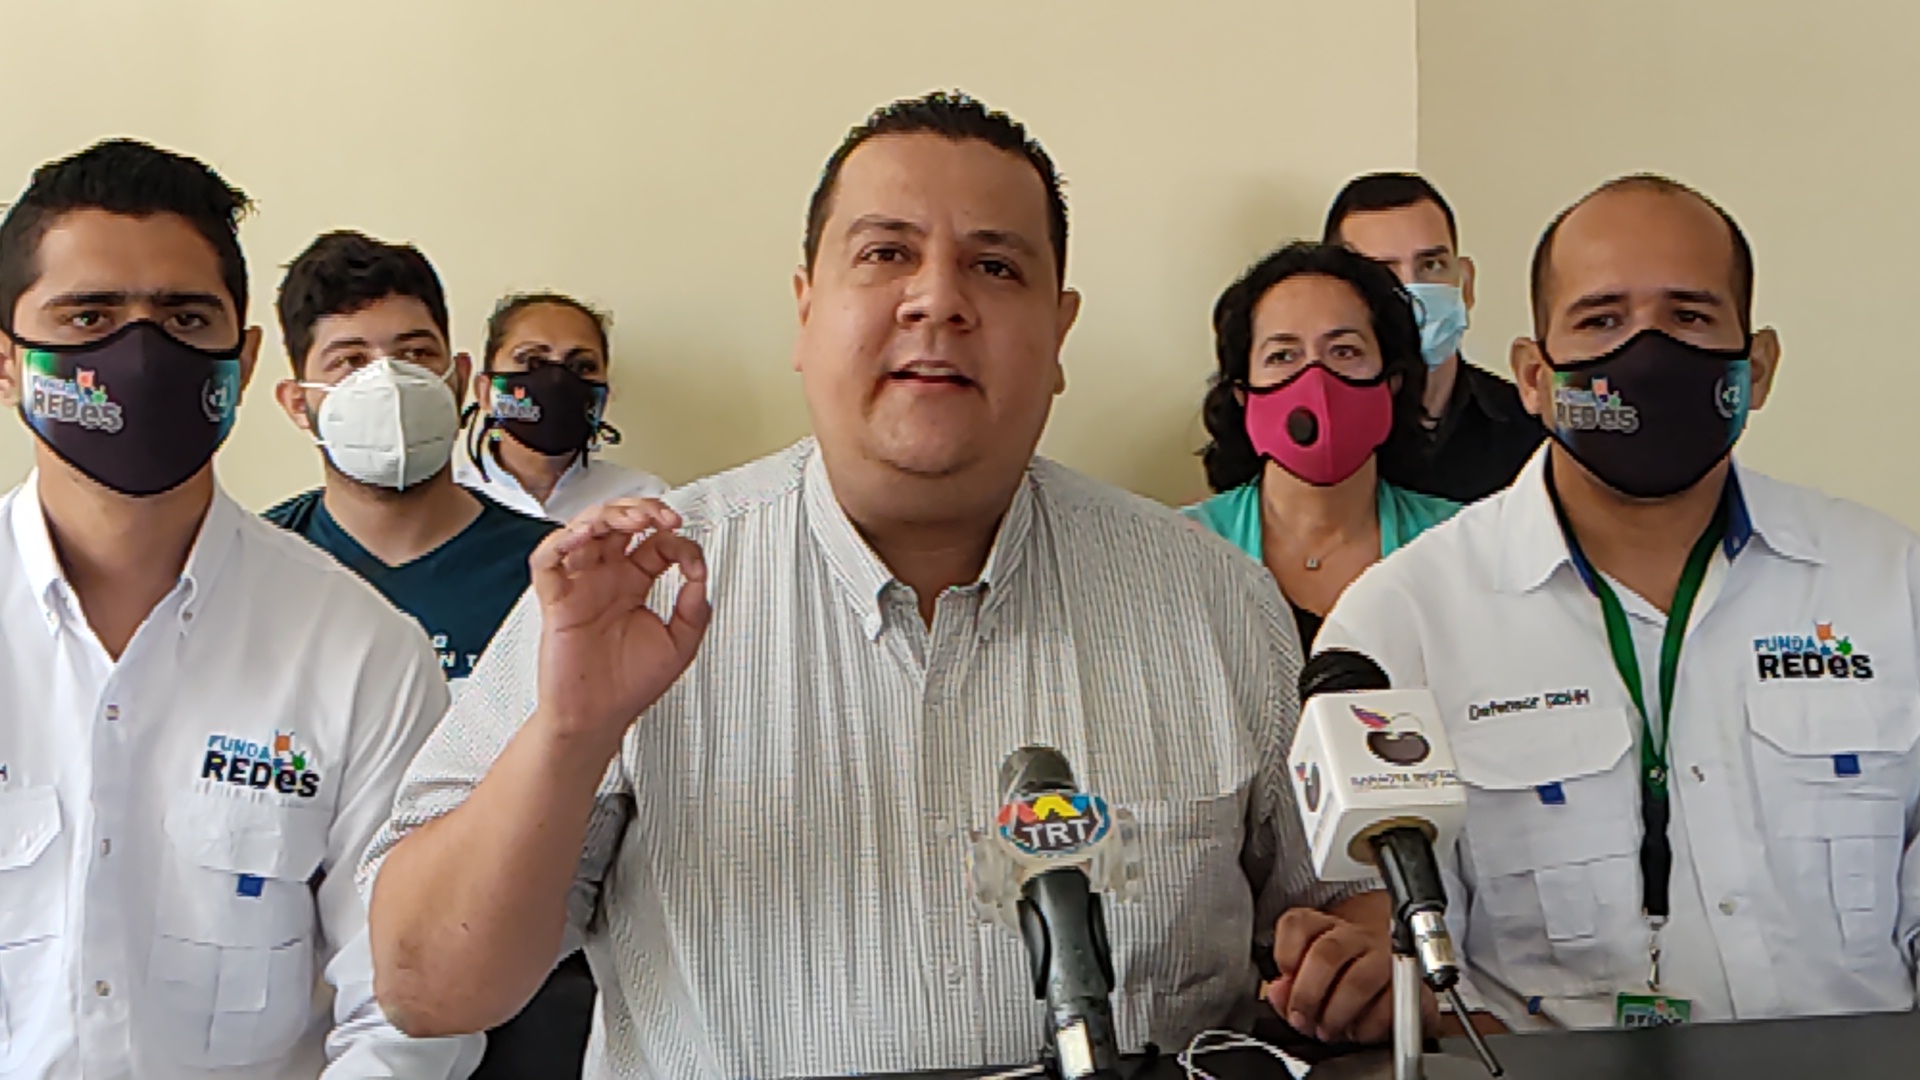 Tarazona denunció que activistas de FundaRedes son hostigados en Apure